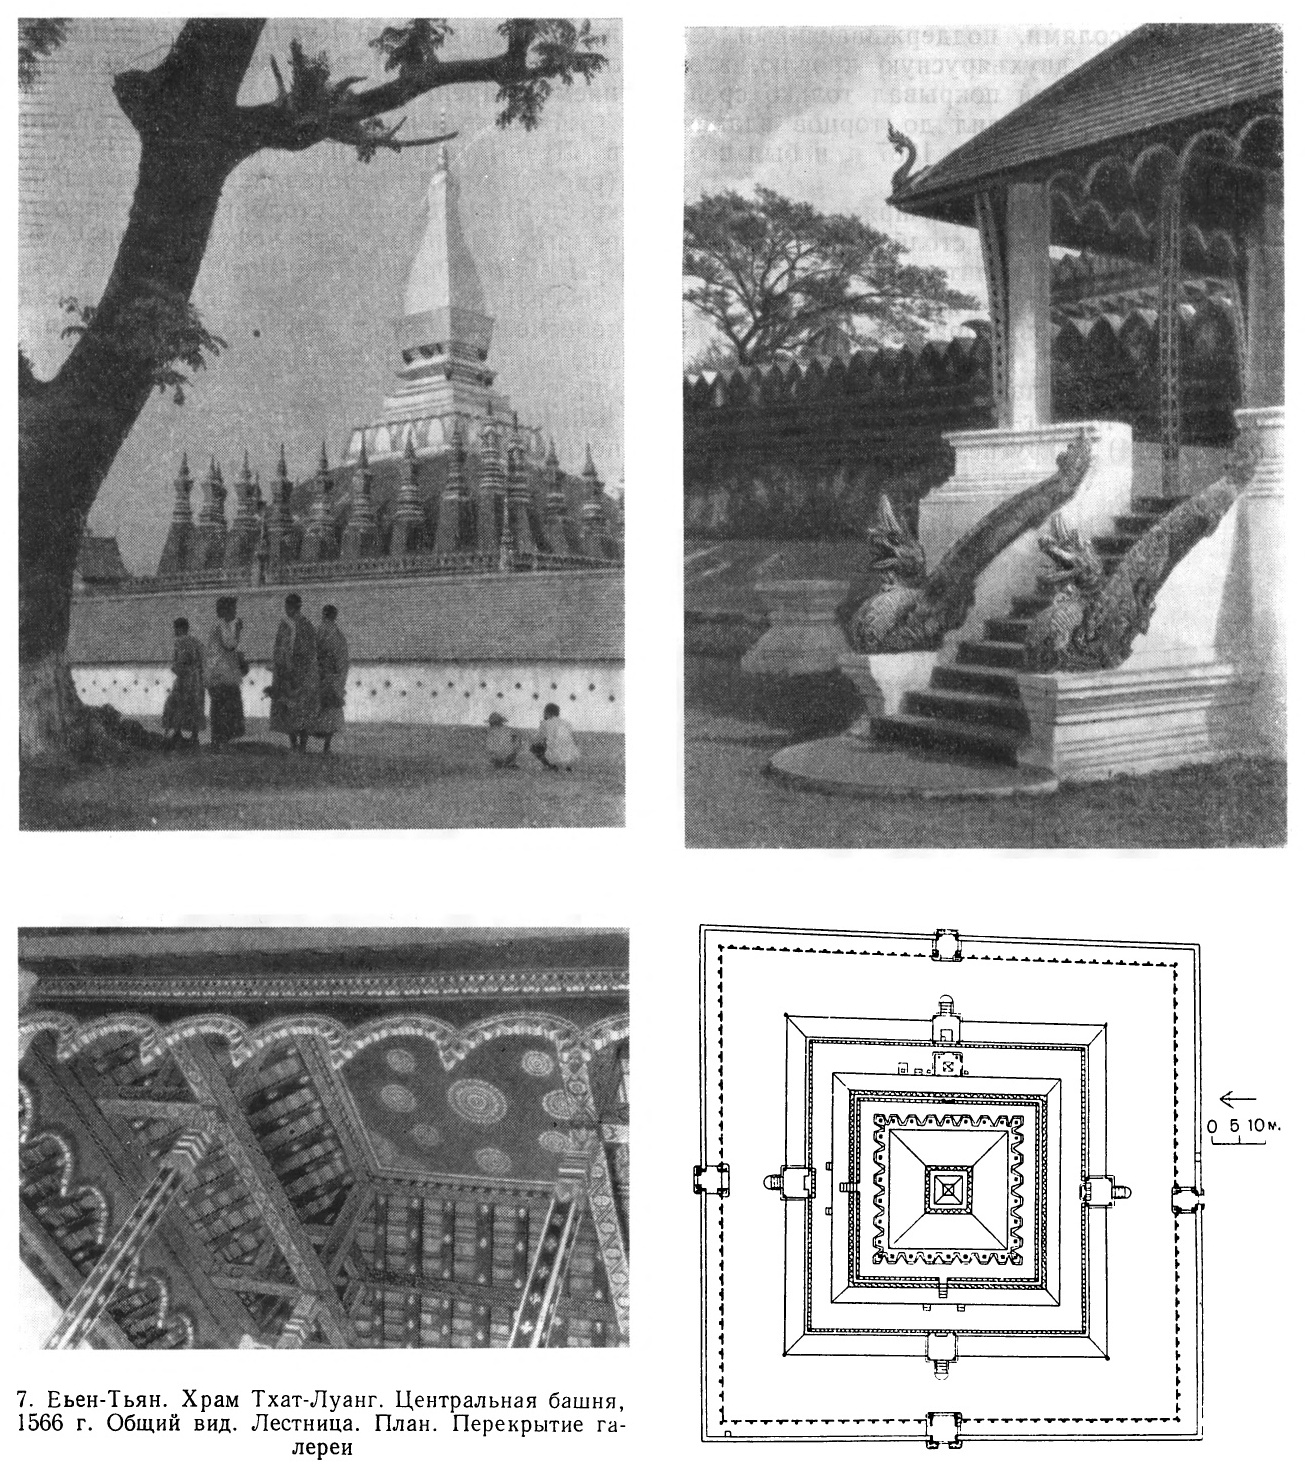 Вьен-Тьян. Храм Тхат-Луанг.